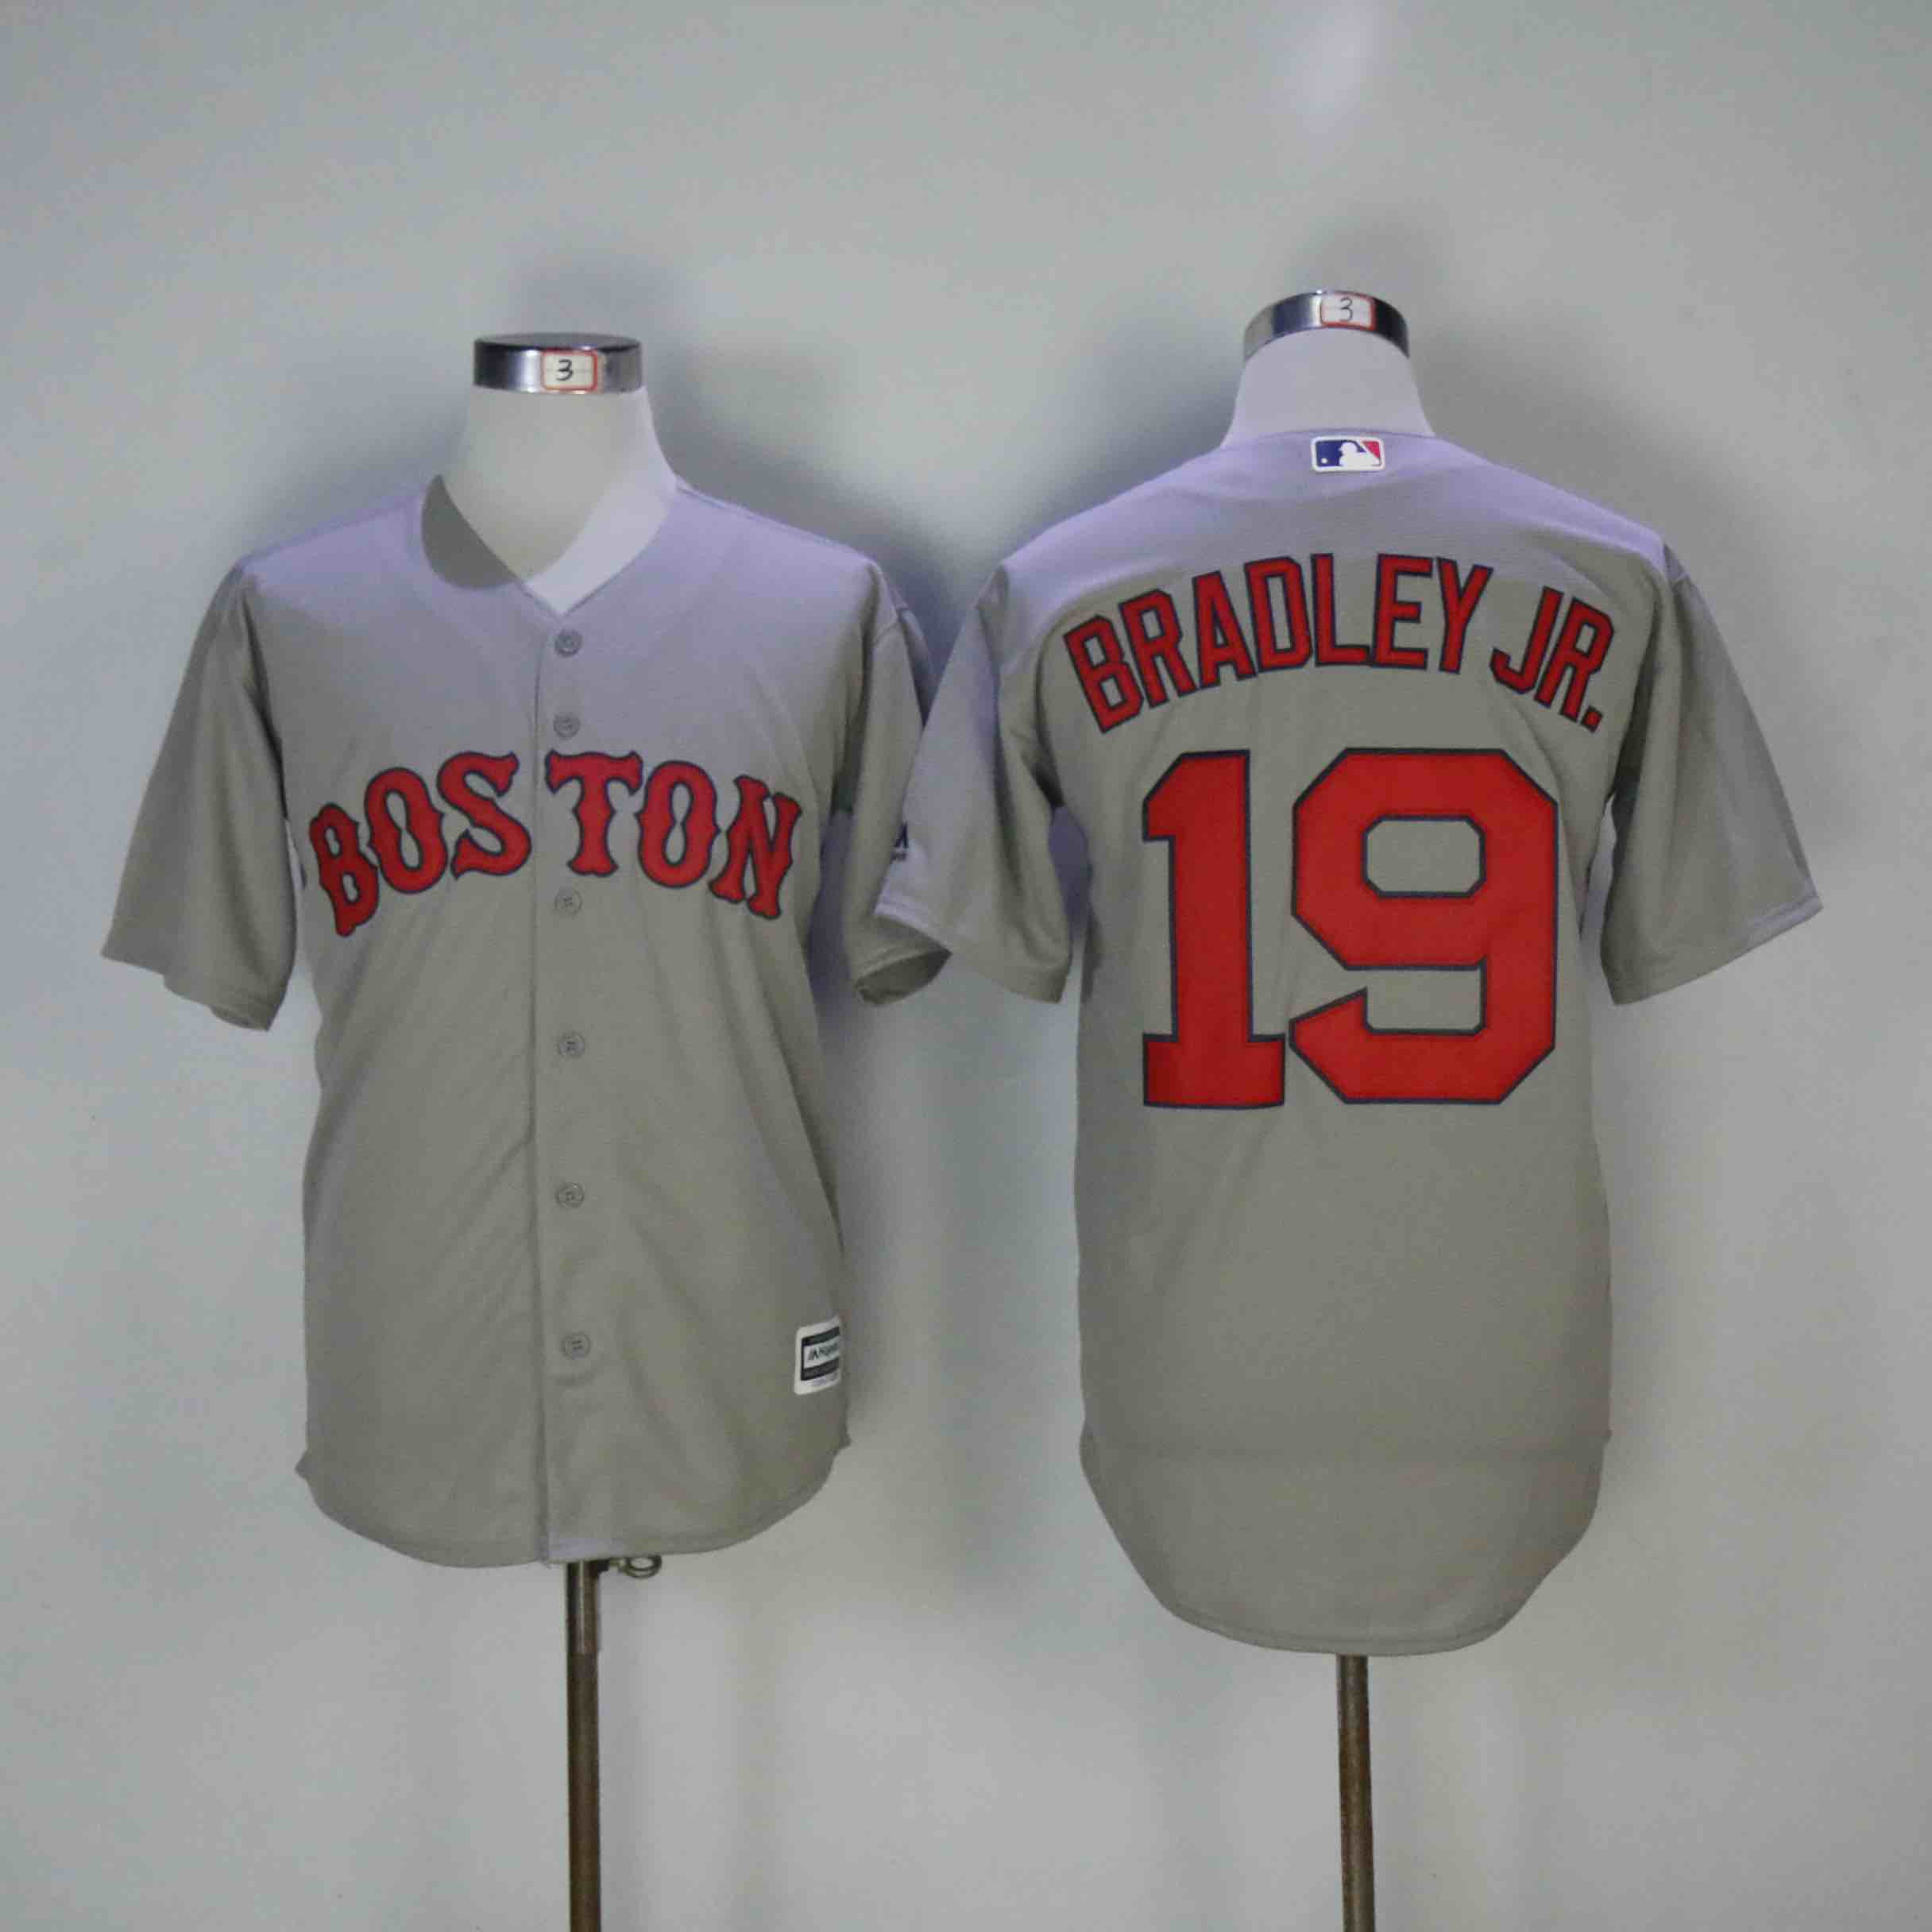 MLB Boston Red Sox #19 Bradley JR Grey Game Jersey